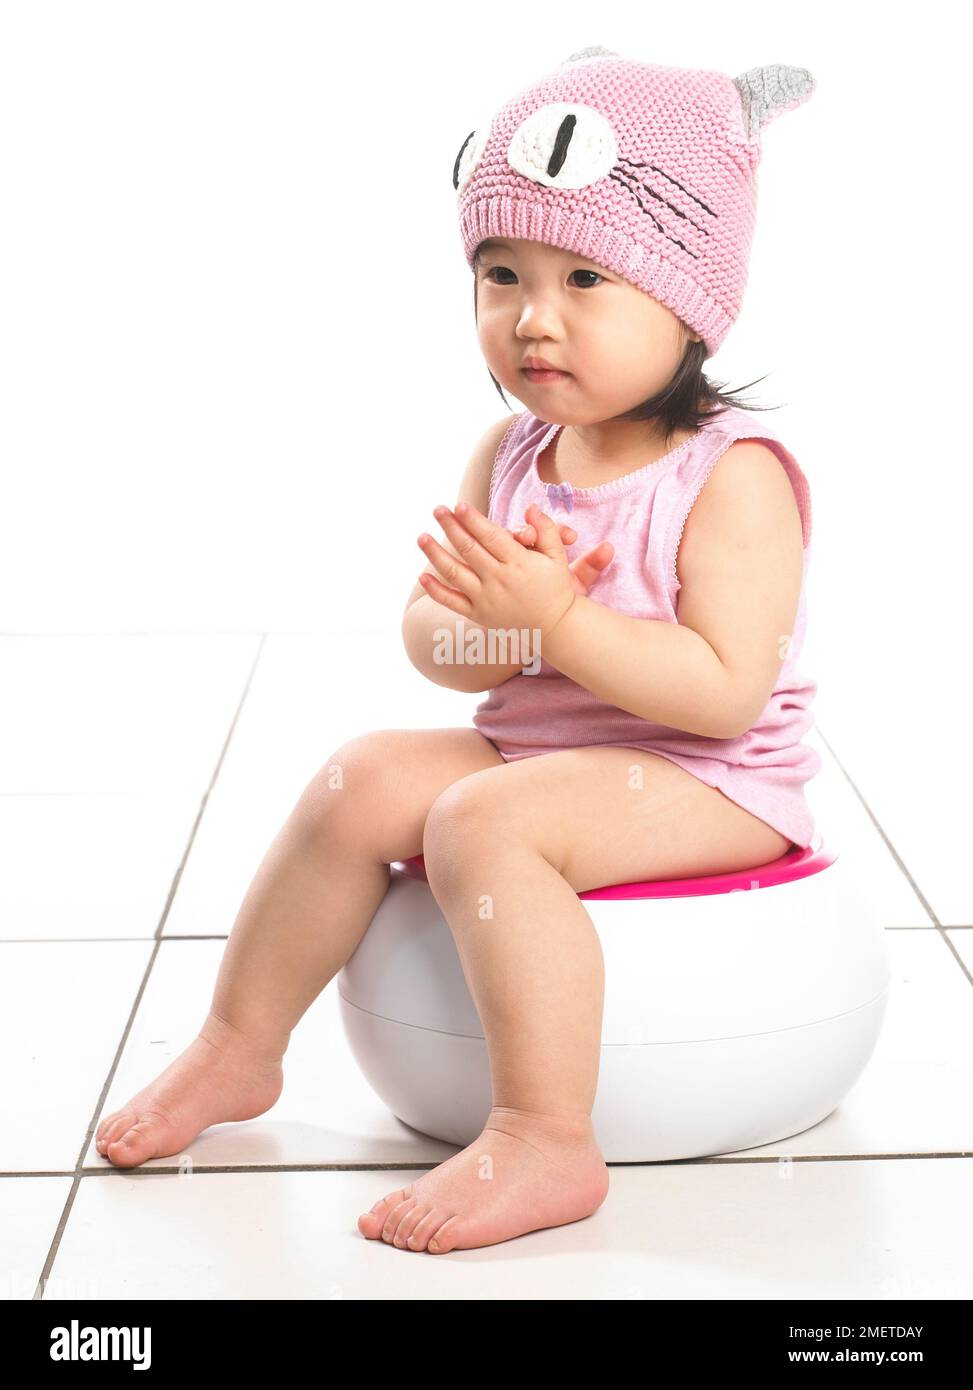 Fille portant un gilet rose et un chapeau en laine rose, assise sur un pot blanc, 20 mois Banque D'Images